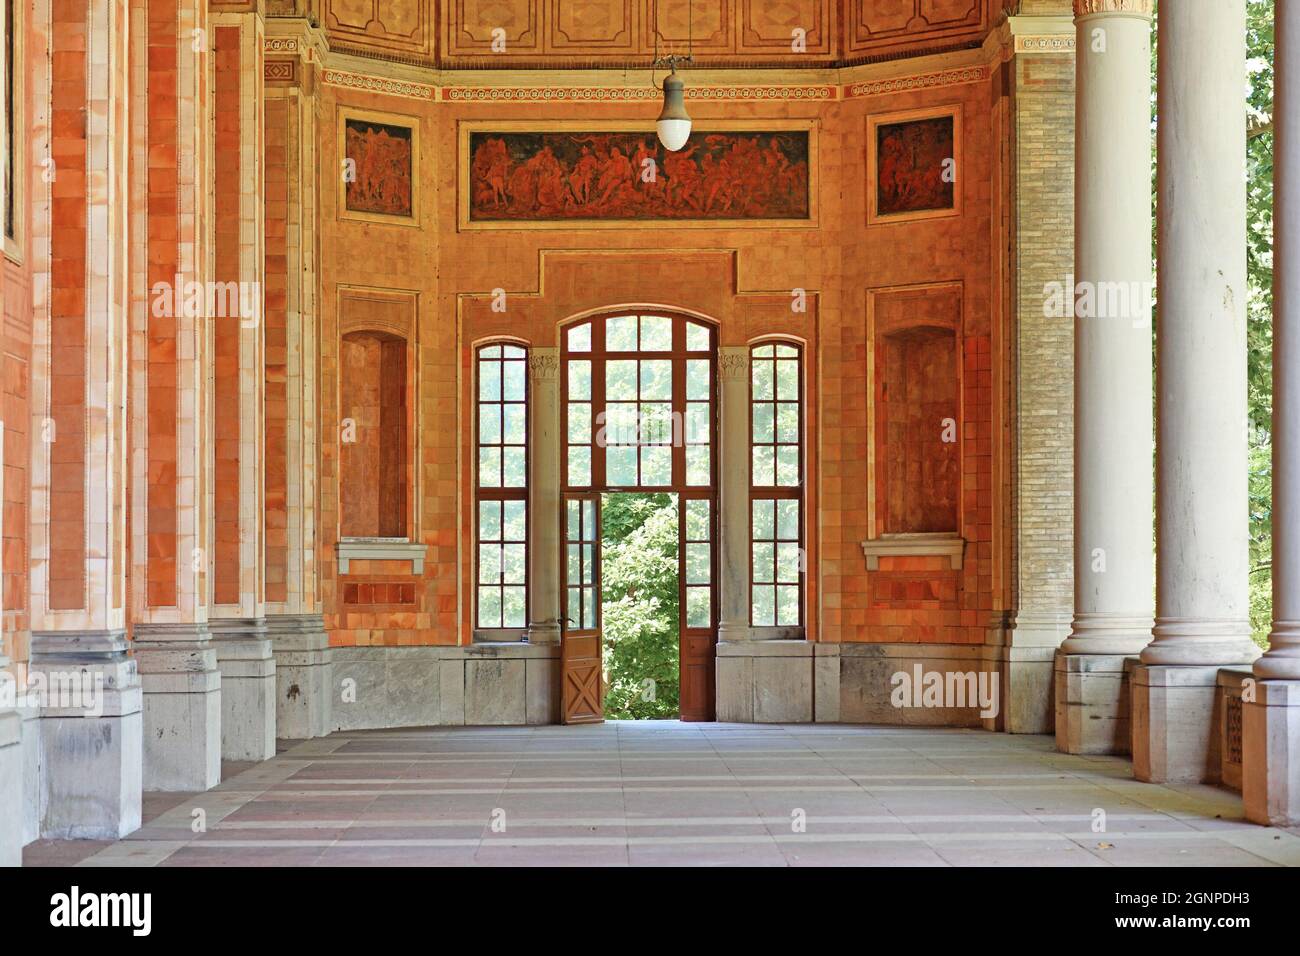 Baden-Baden, Allemagne - juillet 2021: Entrée de la pompe historique appelée 'Trinkhalle' Banque D'Images